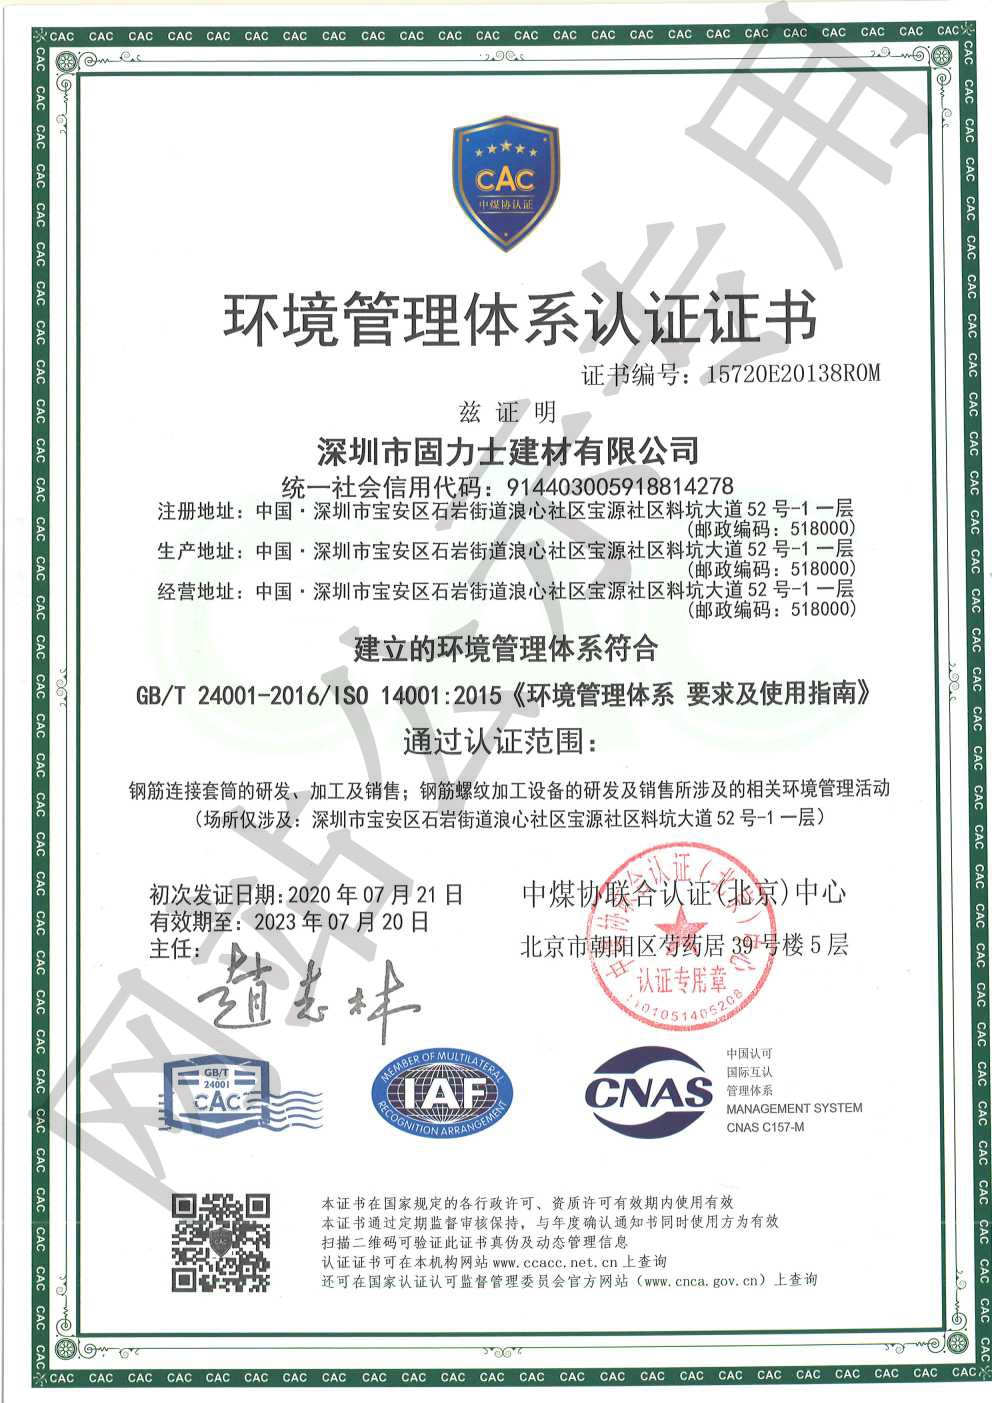 株洲ISO14001证书